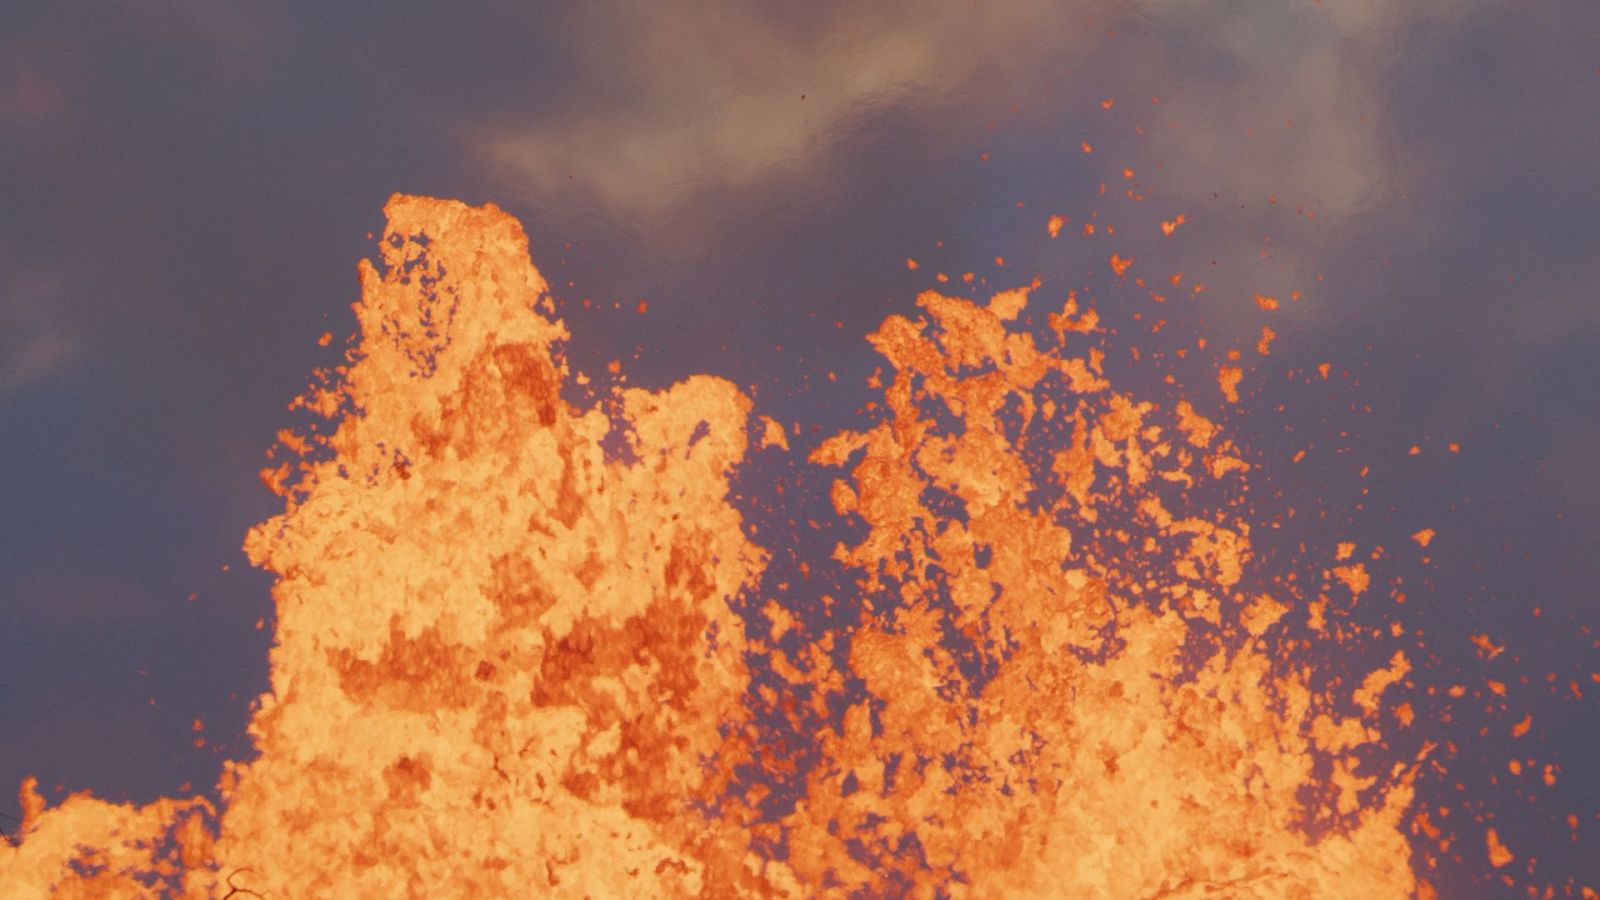 Somos documentales - Volcanes: El fuego del interior